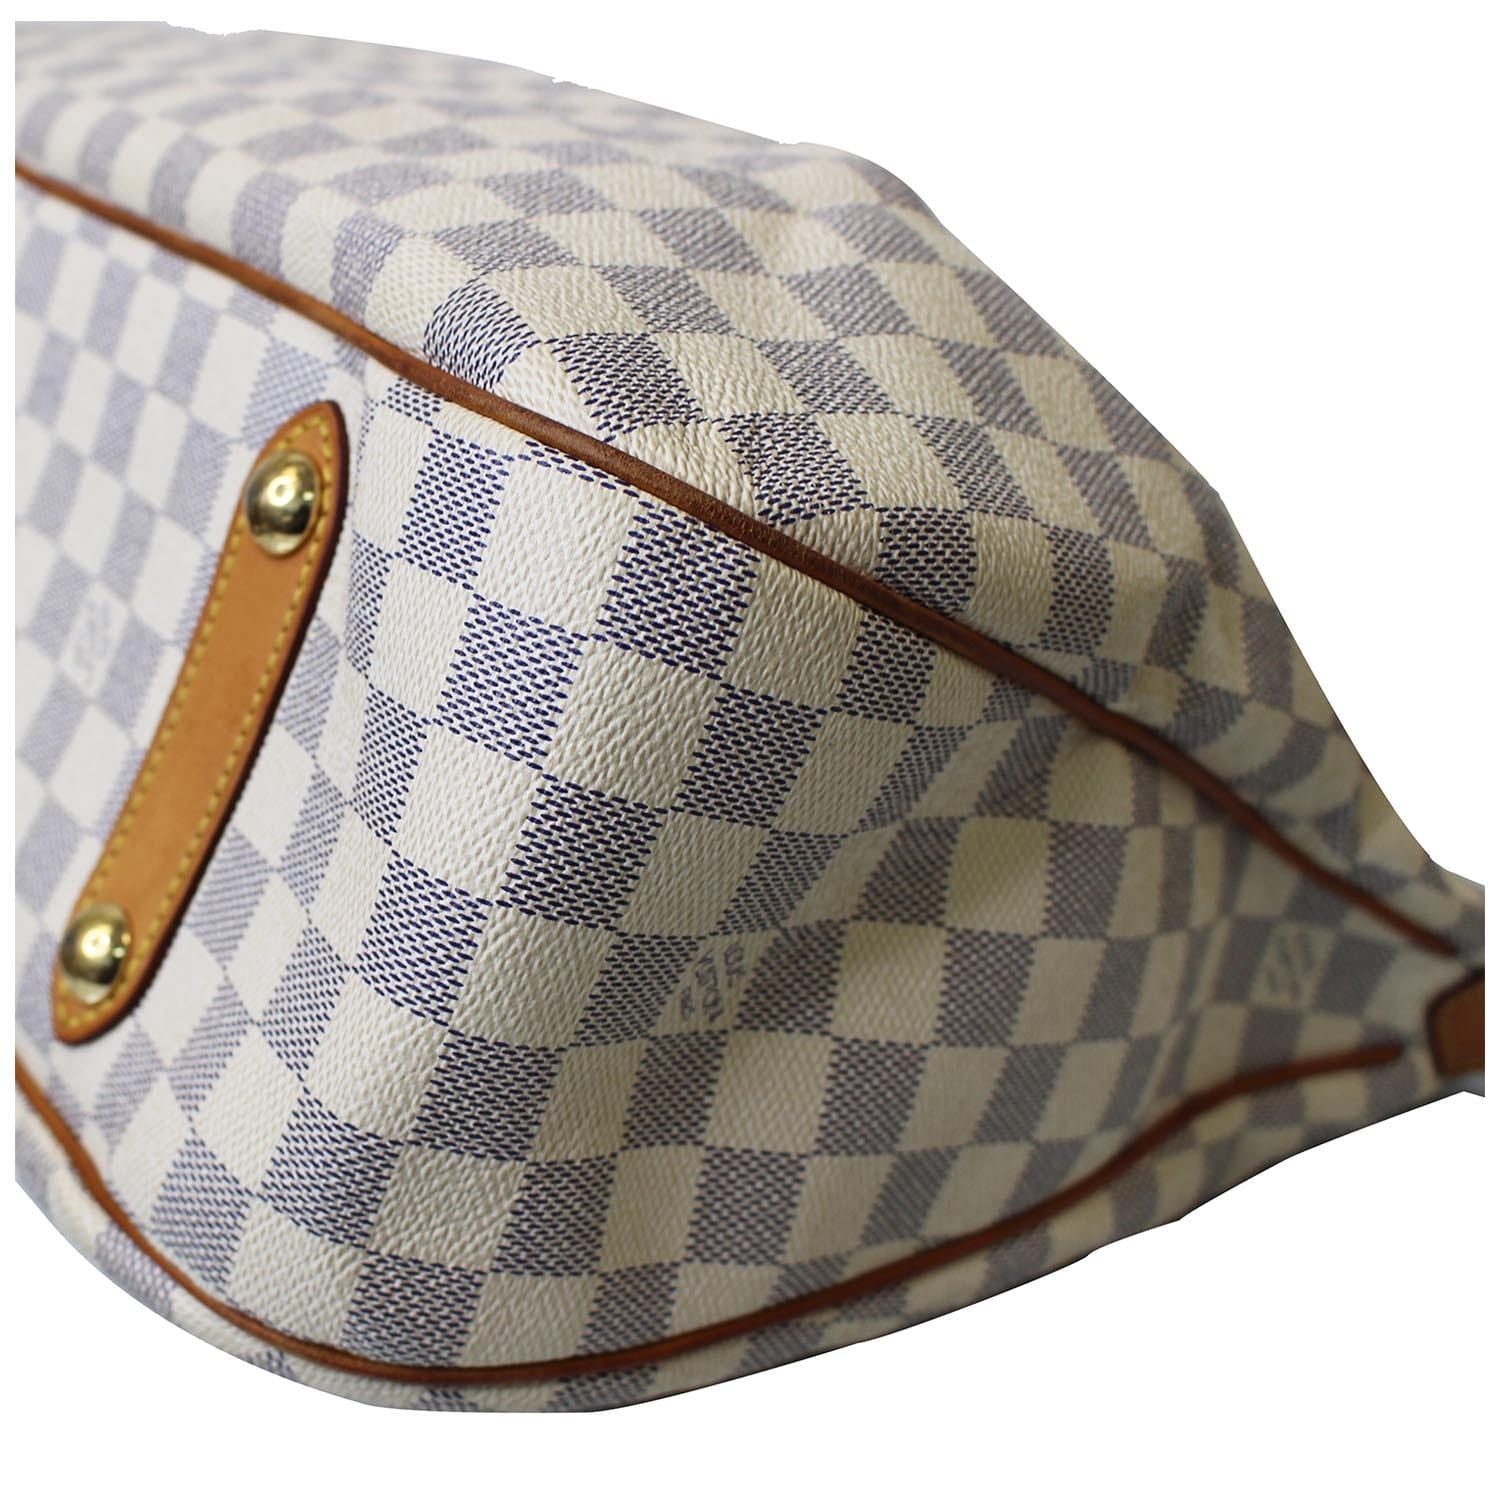 Louis Vuitton Damier Azur Siracusa GM w/ Strap - Neutrals Totes, Handbags -  LOU767060